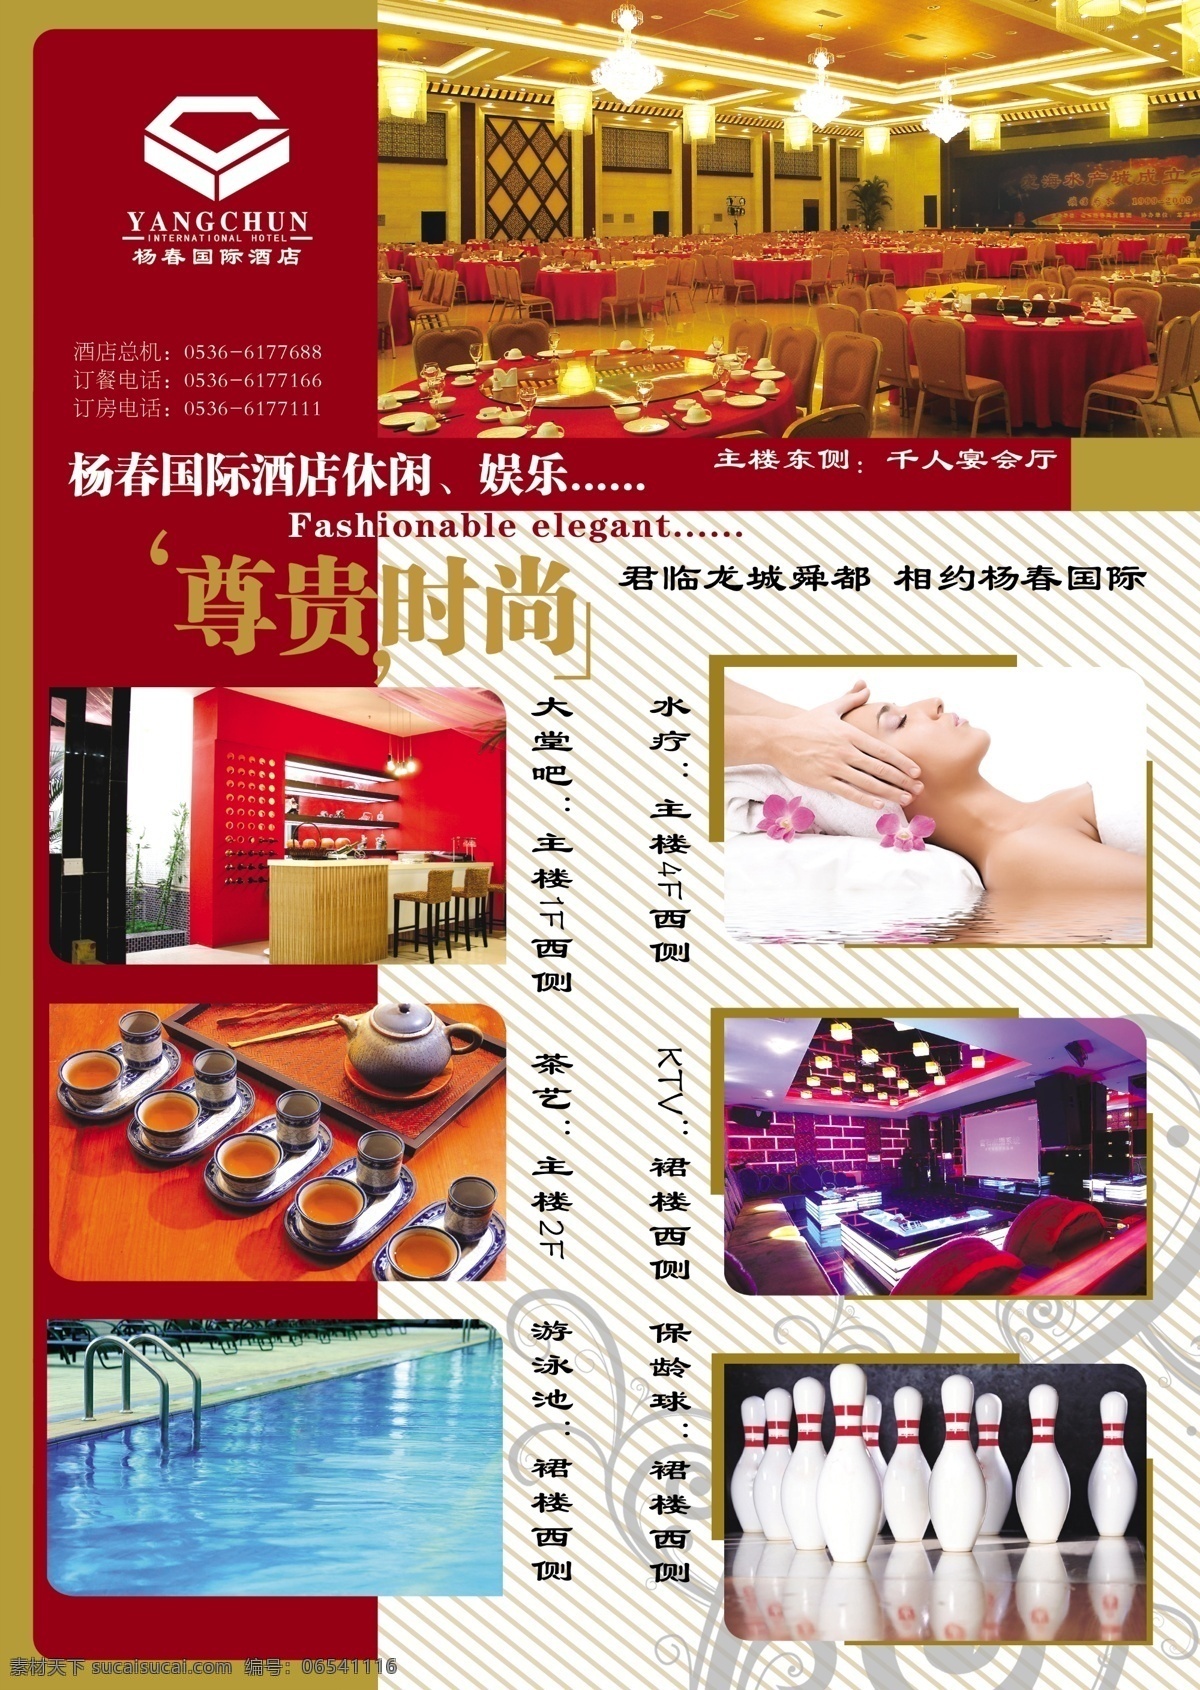 杨春国际酒店 宣传单页 酒店广告dm 水疗 ktv 游泳池 保龄球 dm宣传单 广告设计模板 源文件